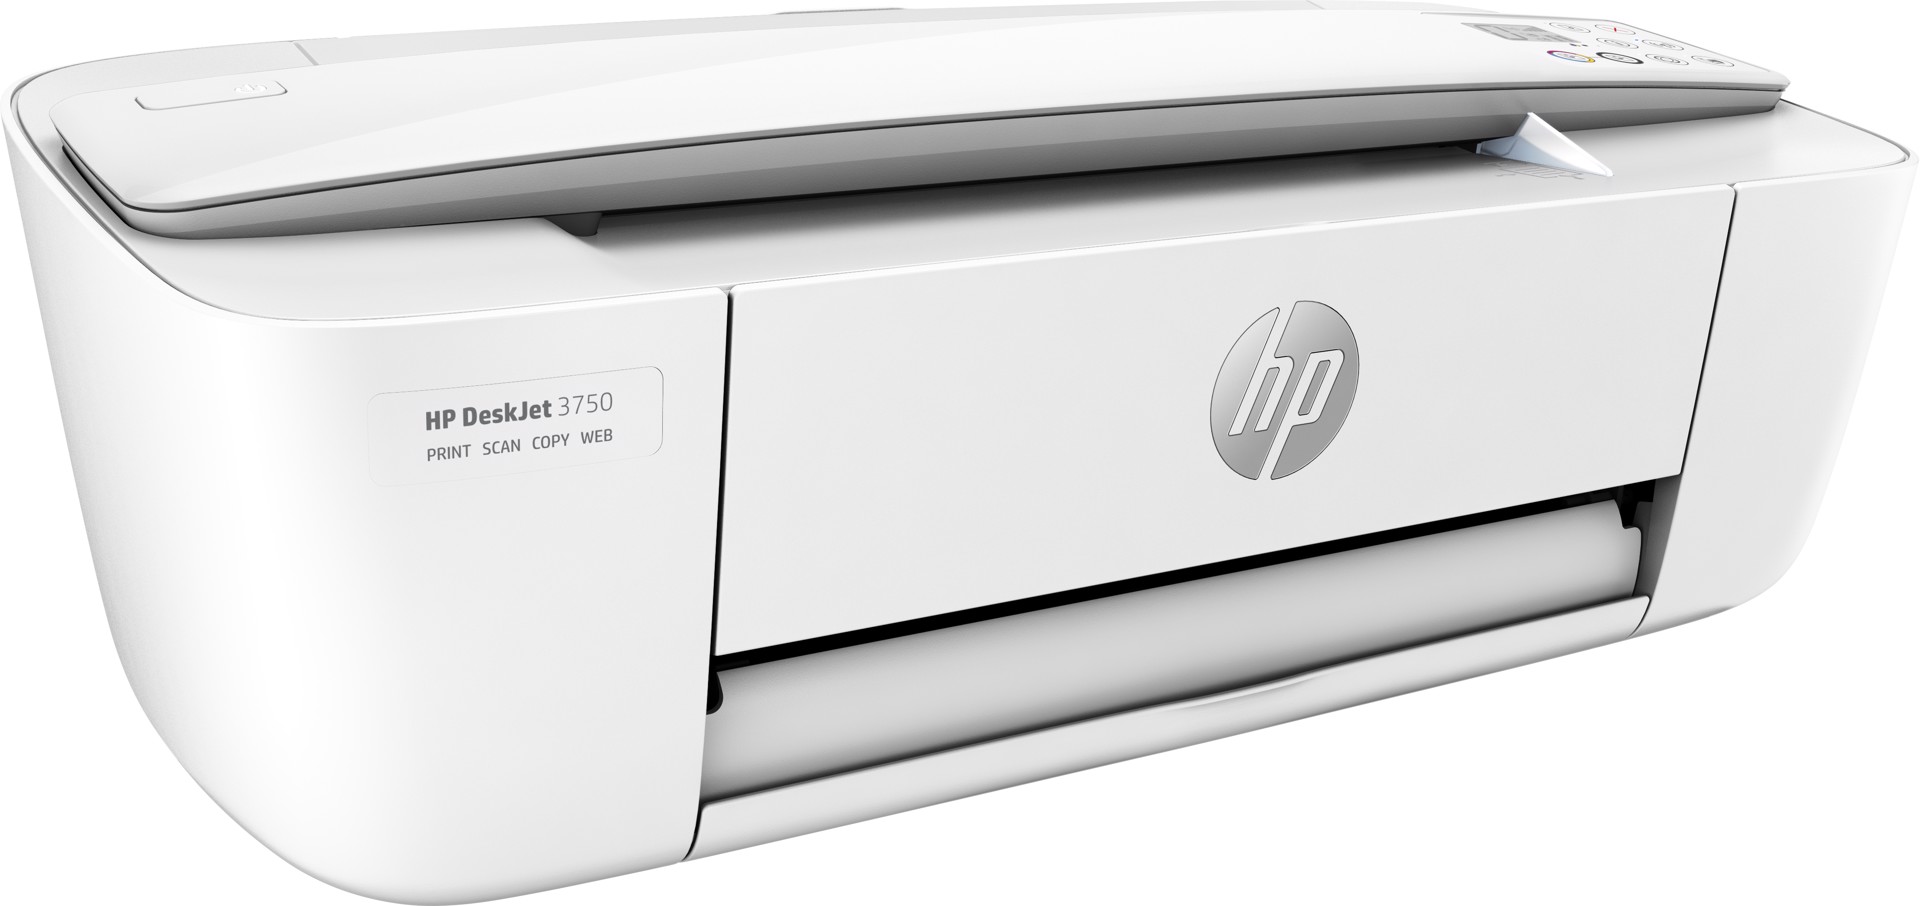 HP DeskJet Stampante multifunzione 3750, Casa, Stampa, copia, scansione,  wireless, scansione verso e-mail/PDF, stampa fronte/retro, Stampanti  Inkjet in Offerta su Stay On